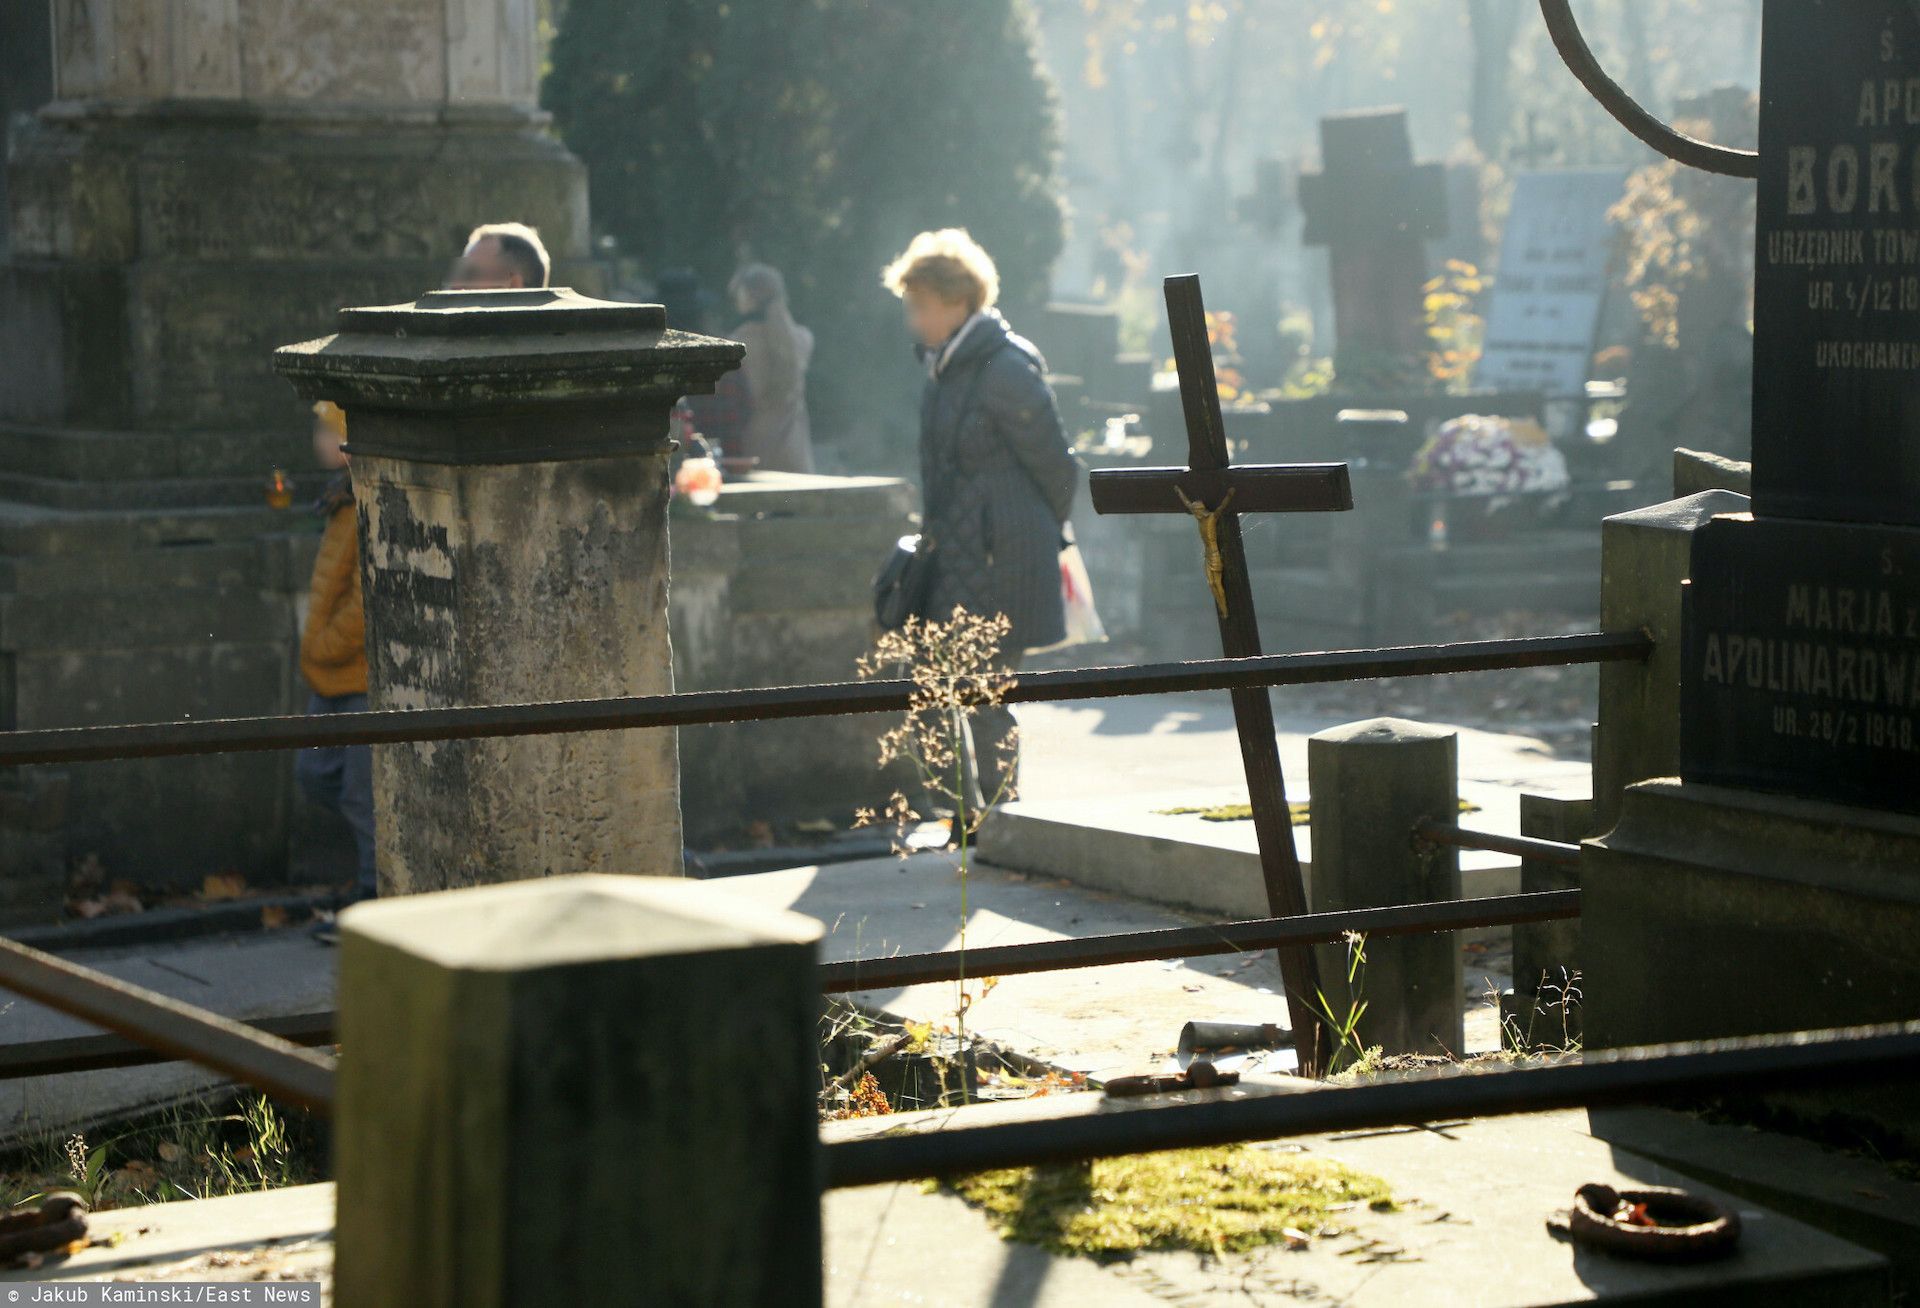 Romowie w bardzo nietypowy sposób obchodzą Wszystkich Świętych. 1 listopada na grobach biesiadują i piją alkohol